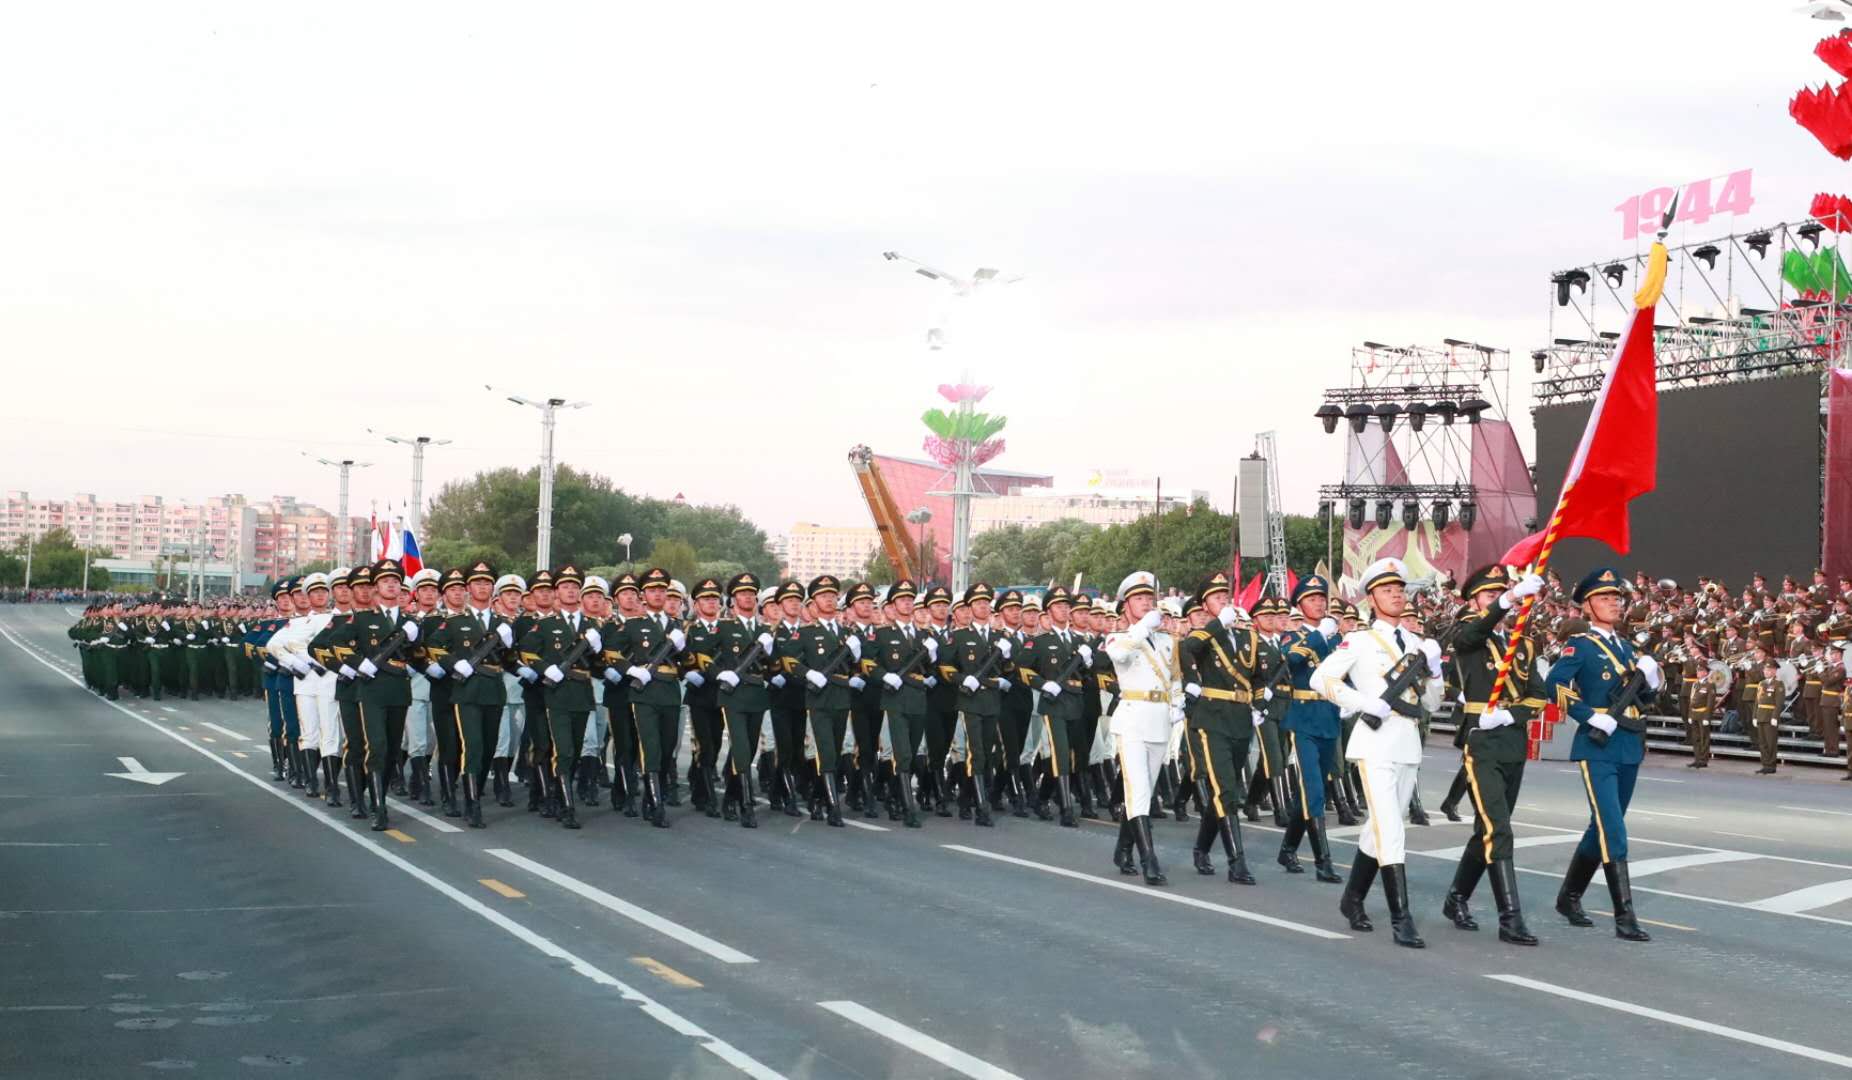 解放军仪仗大队将再度亮相白俄罗斯阅兵式